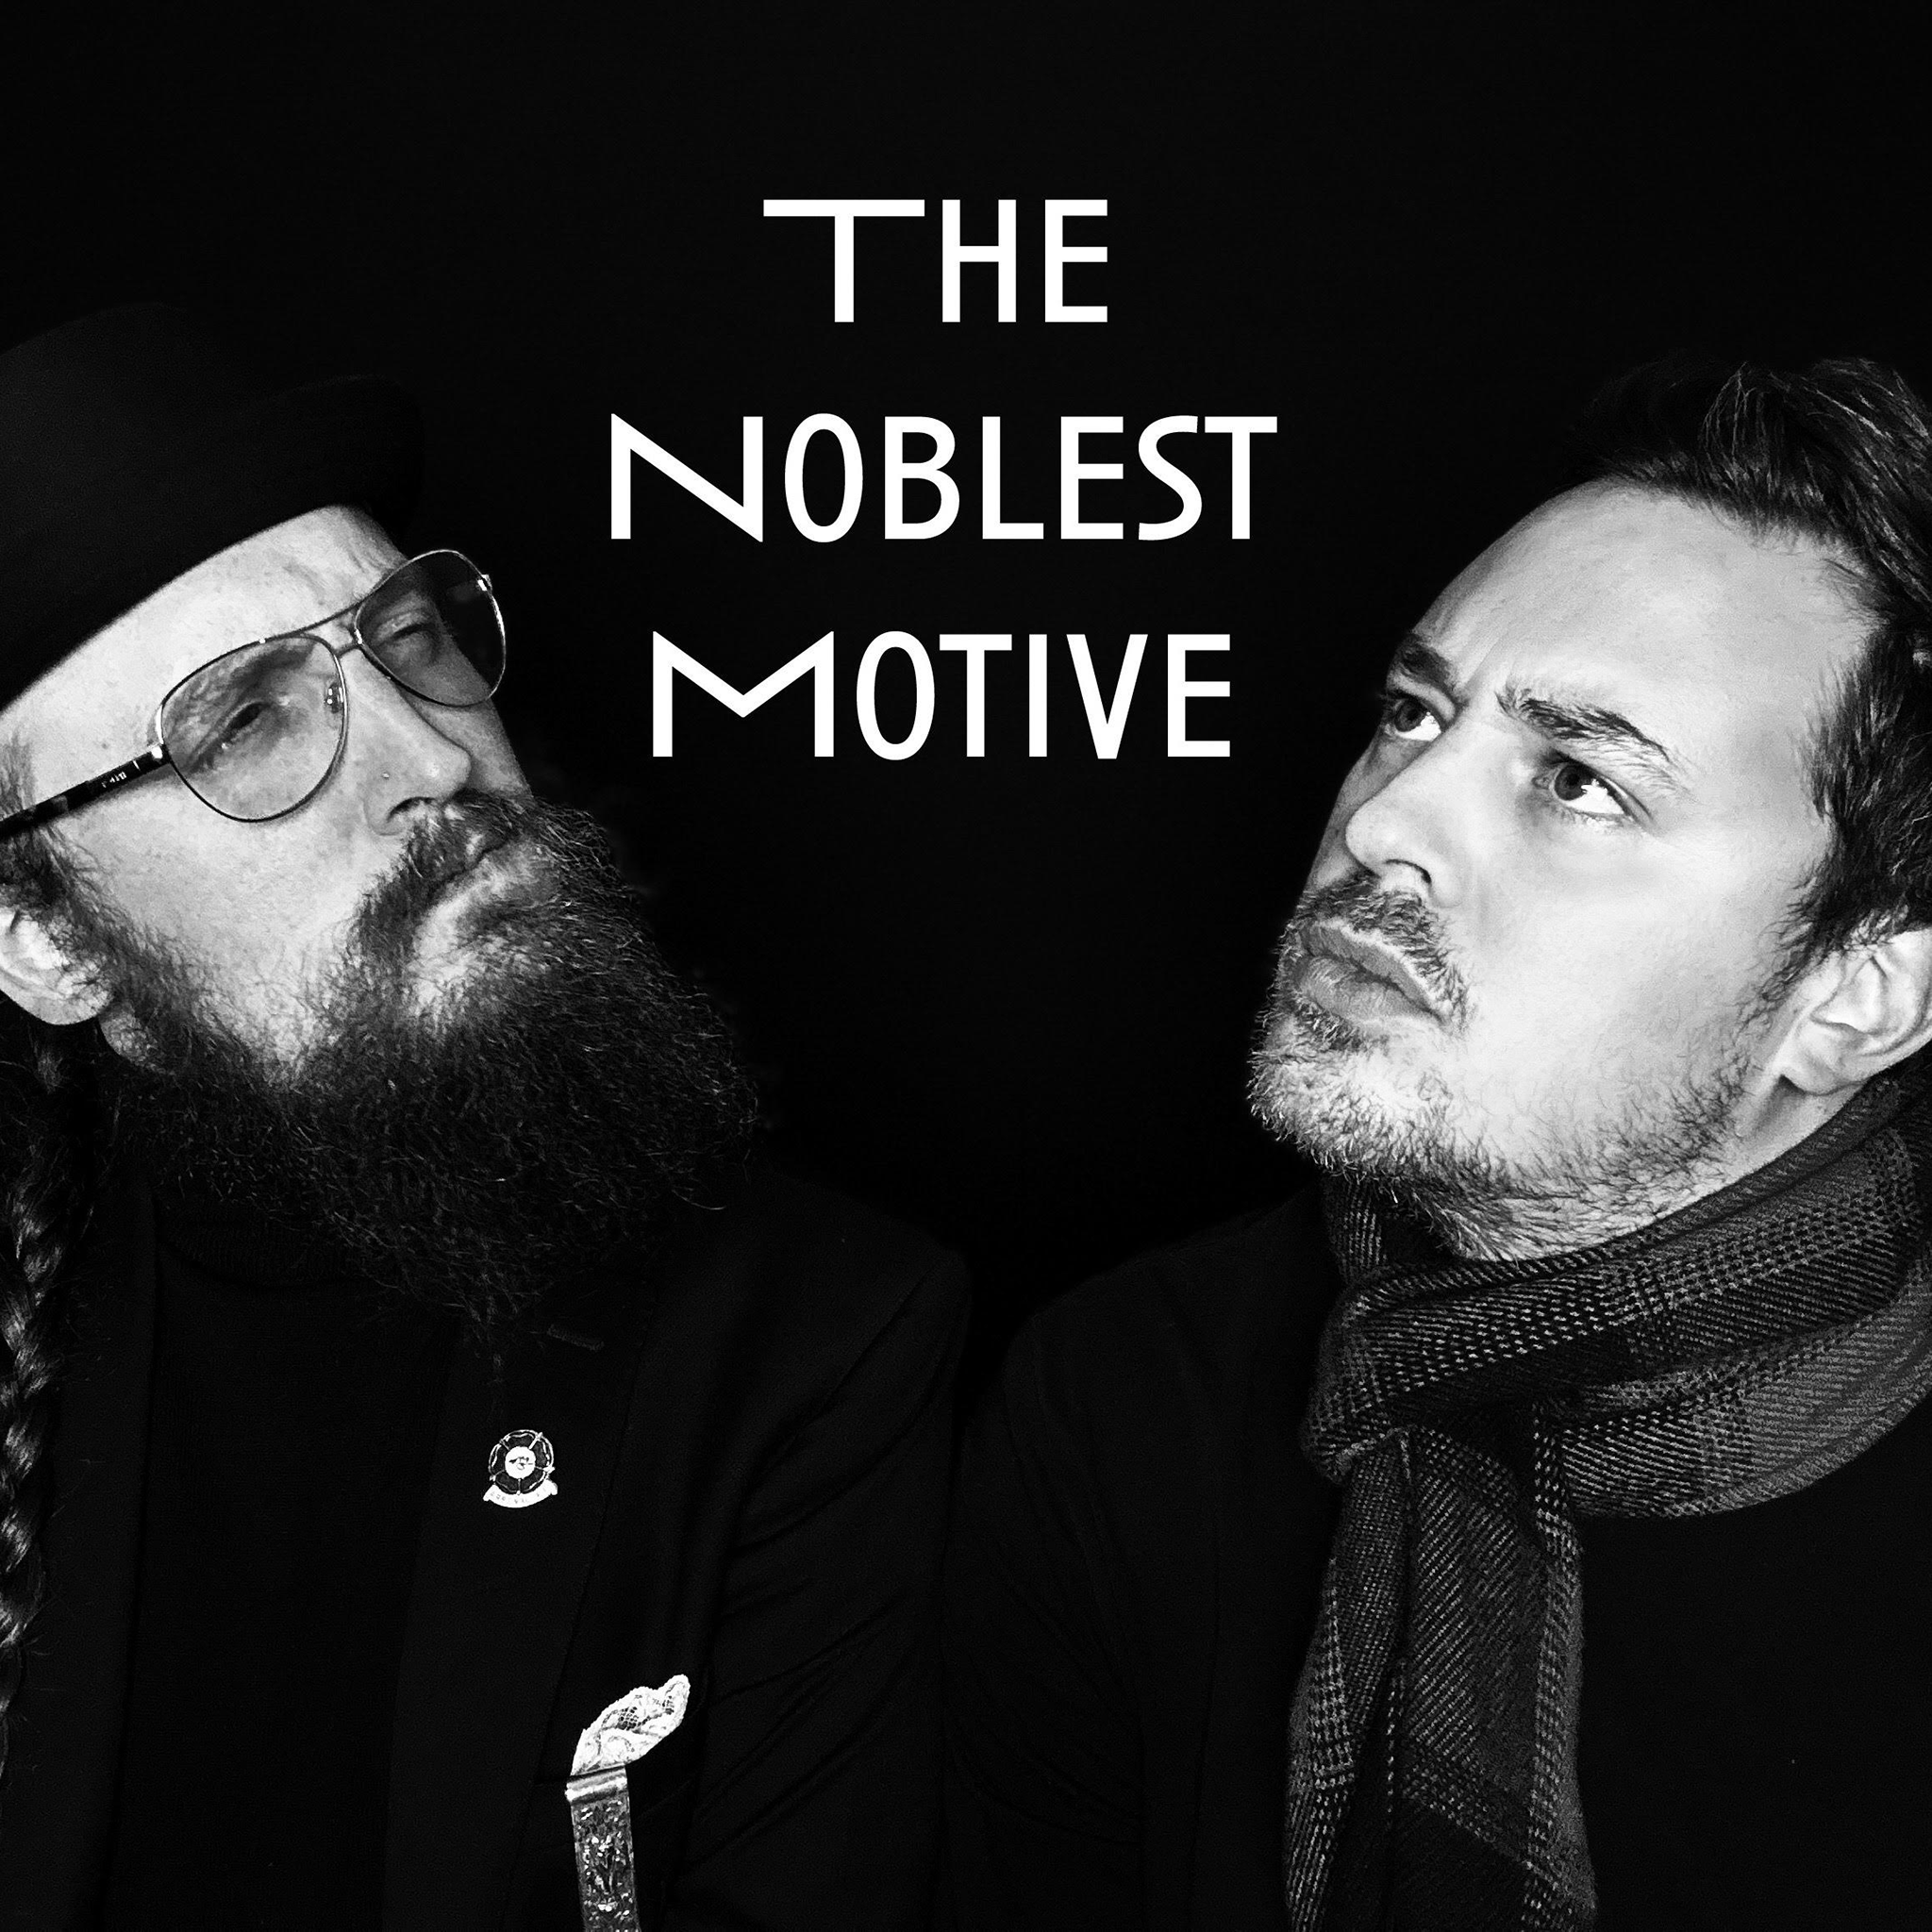 The Noblest Motive: Social Media